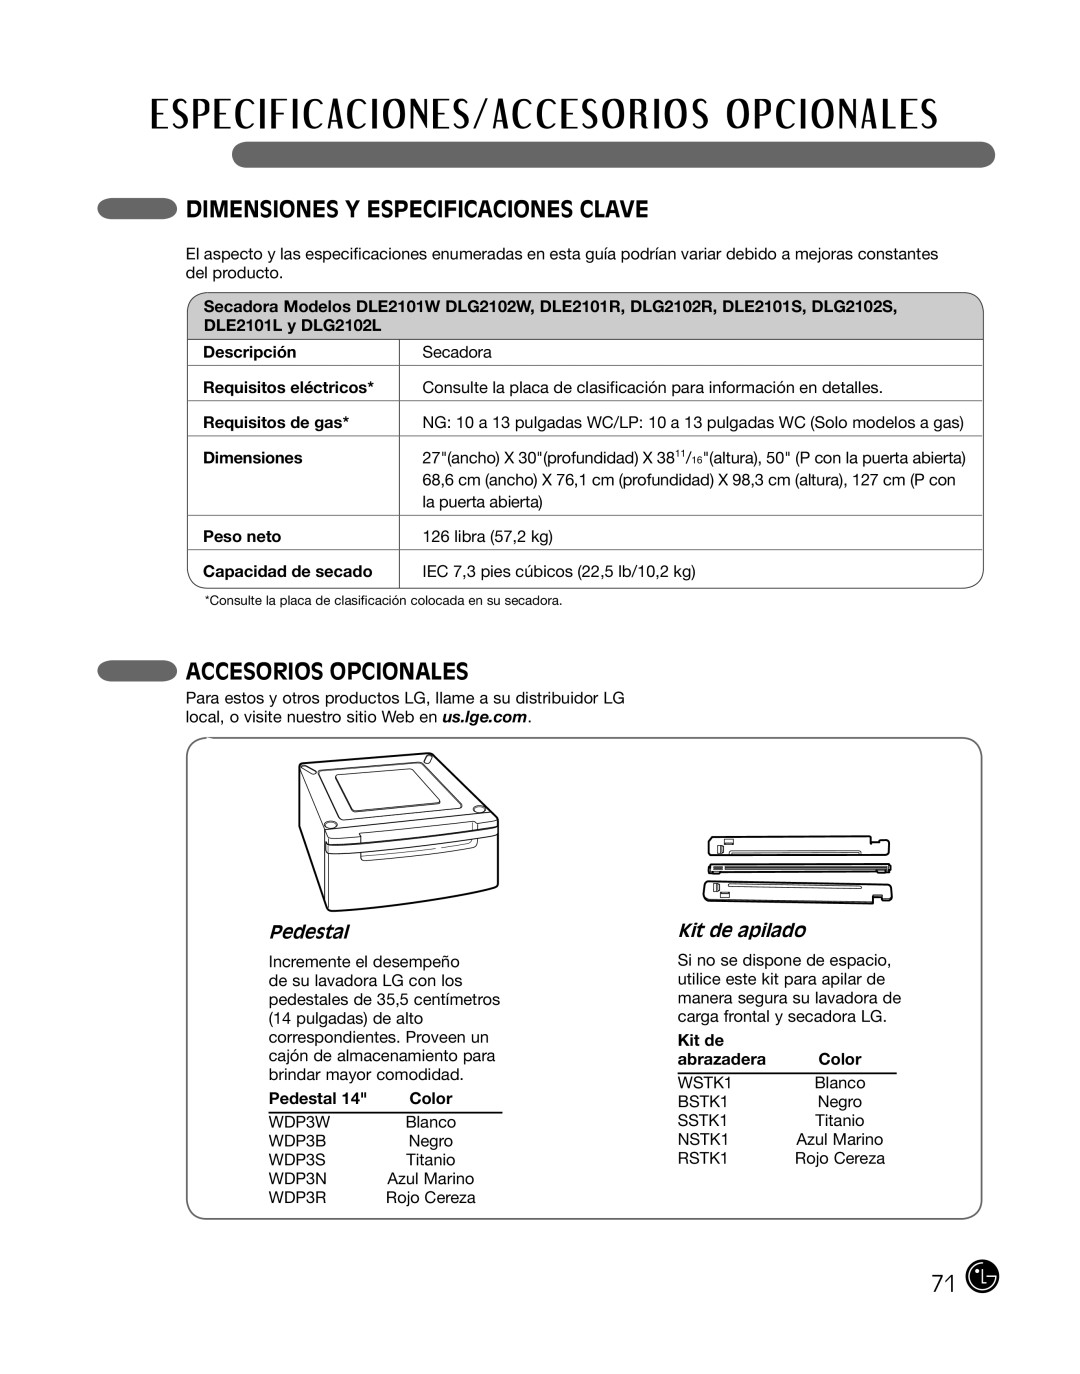 LG Electronics 3828EL3004T, D2102R Dimensiones Y Especificaciones Clave, Accesorios Opcionales, Pedestal, Kit de apilado 